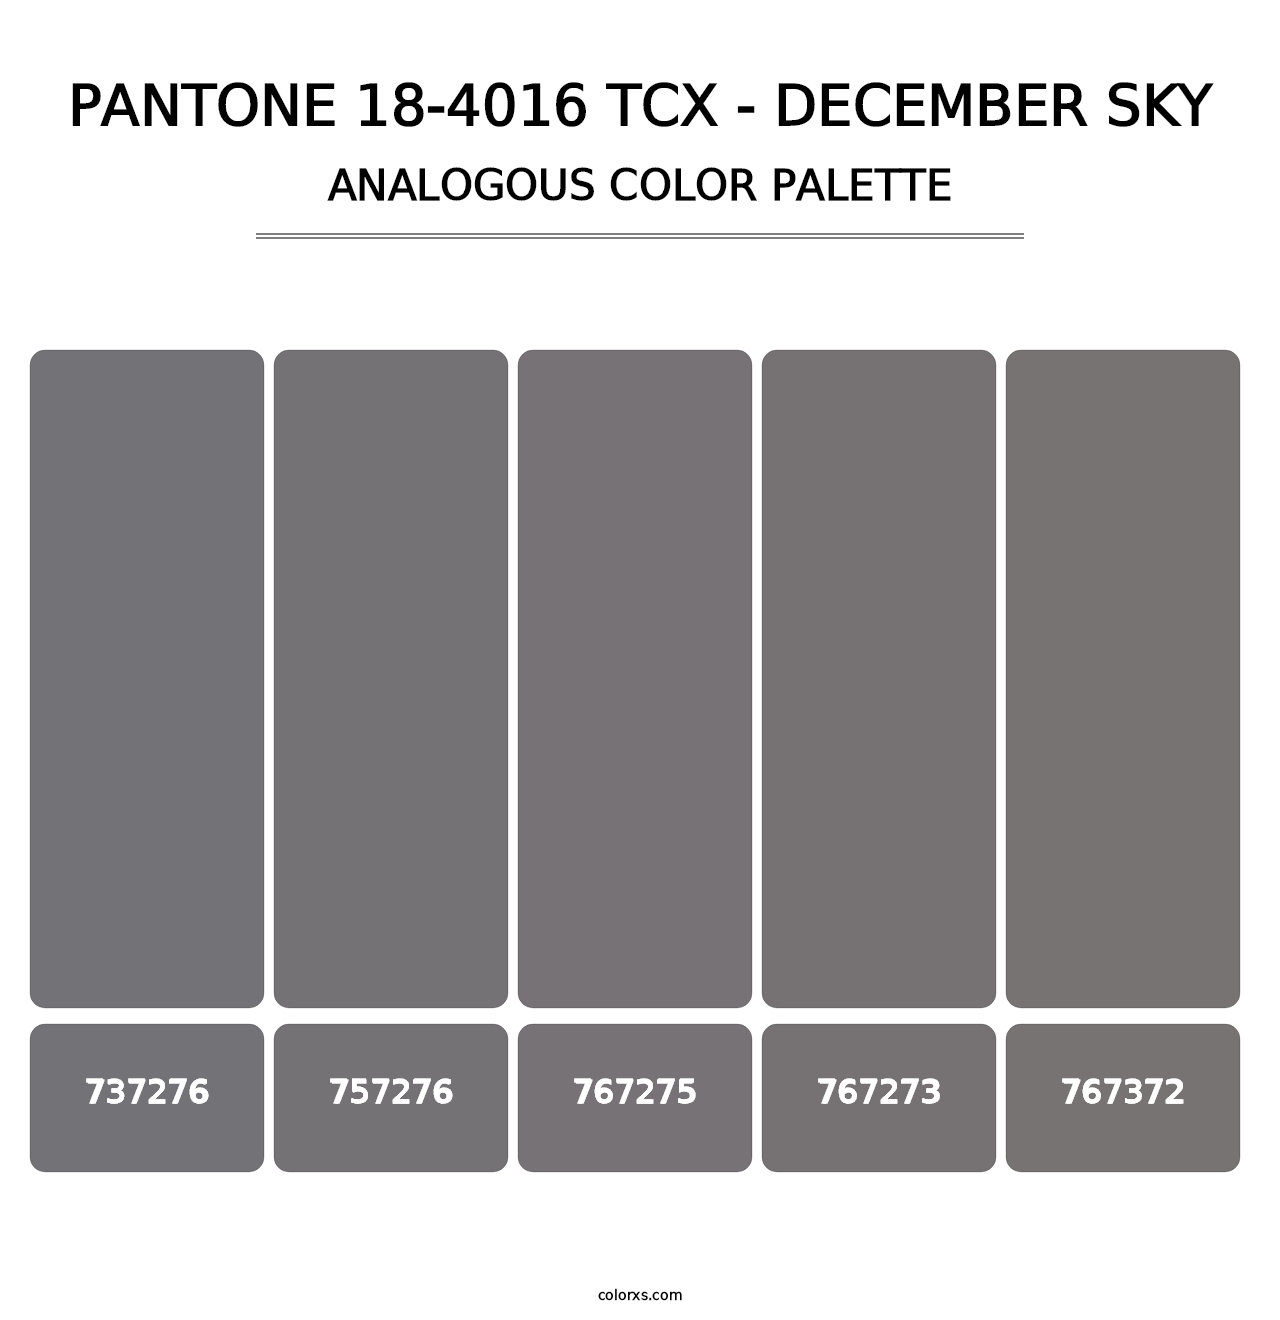 PANTONE 18-4016 TCX - December Sky - Analogous Color Palette